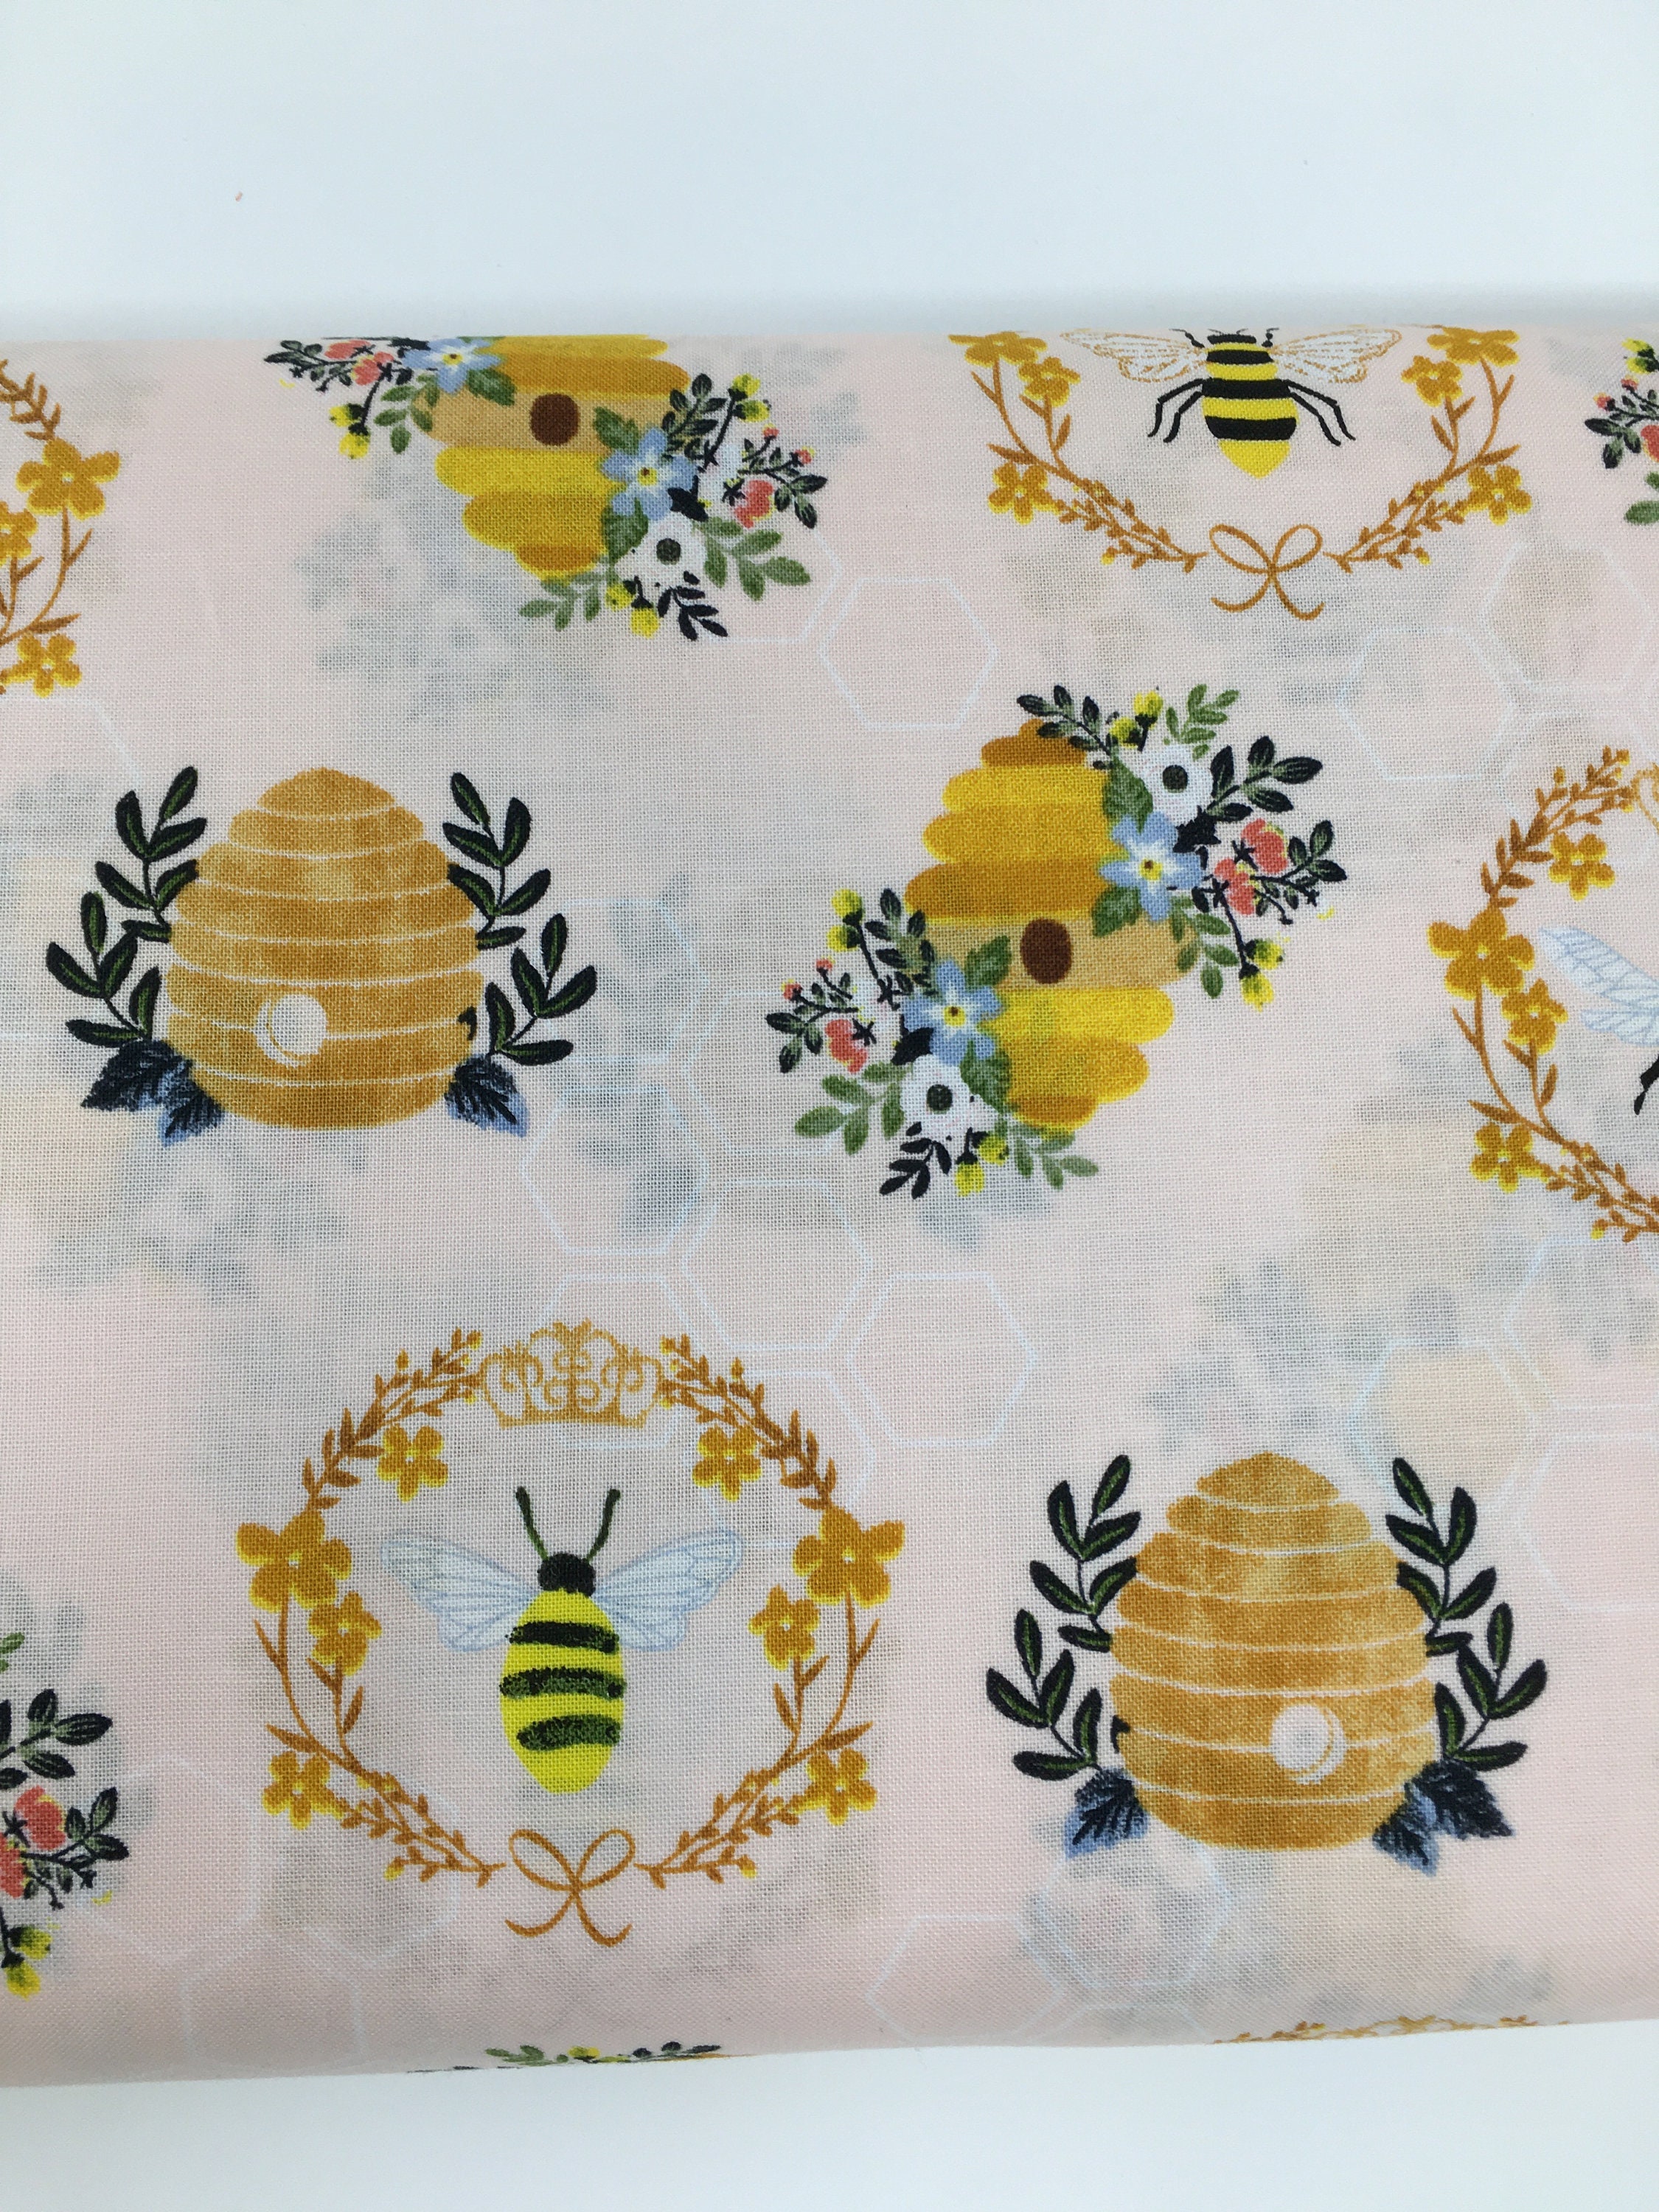 Cute Bee Pattern, Honey Bee, Bumble Bee, Bee Fabric, Honey Bee Fabric, Bee  Design, Humble Bee, Bee Keeper, Bee Hive, Honey Comb, Honey, Honey Bee